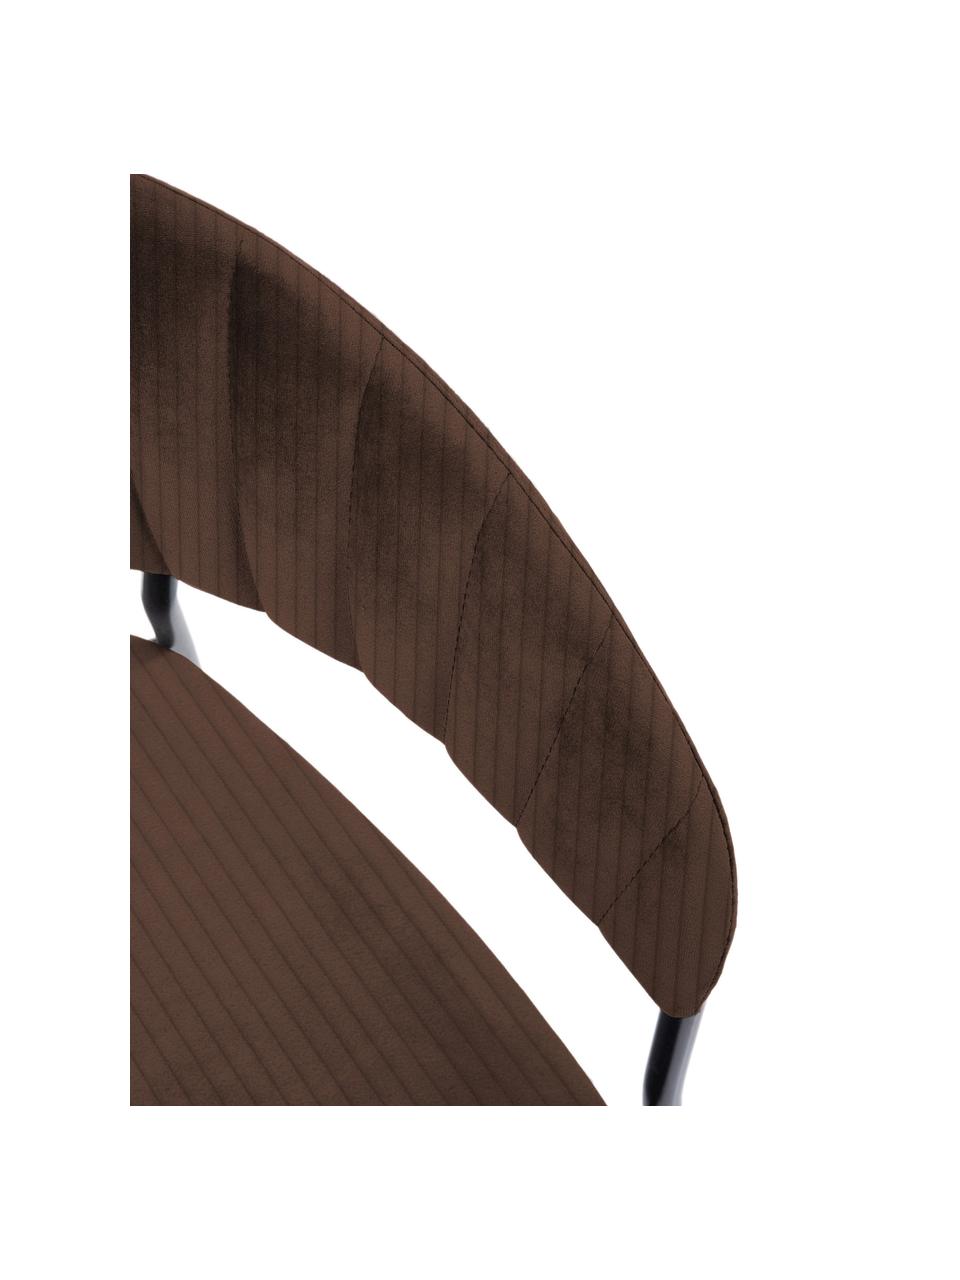 Fluwelen stoelen Belle, 2 stuks, Bekleding: fluweel (100% polyester) , Frame: gepoedercoat staal, Fluweel donkerbruin, zwart, B 57 x H 54 cm